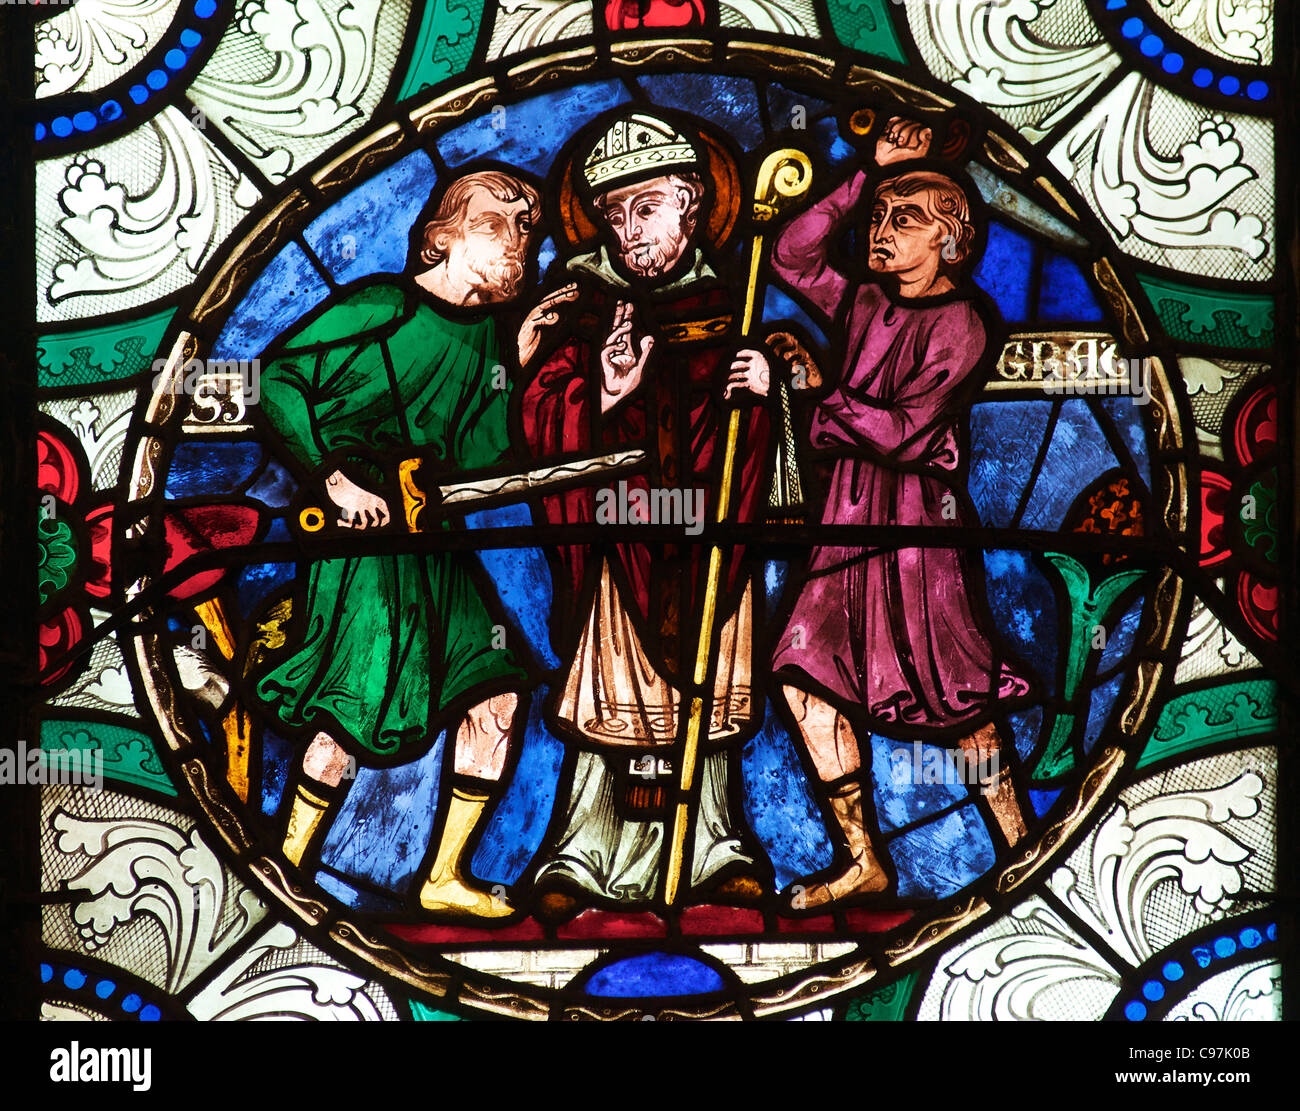 Le meurtre de saint Thomas Becket, un vitrail médiéval, la Cathédrale de Canterbury, Kent, England, UK, Royaume-Uni, GO, Grande Bretagne Banque D'Images